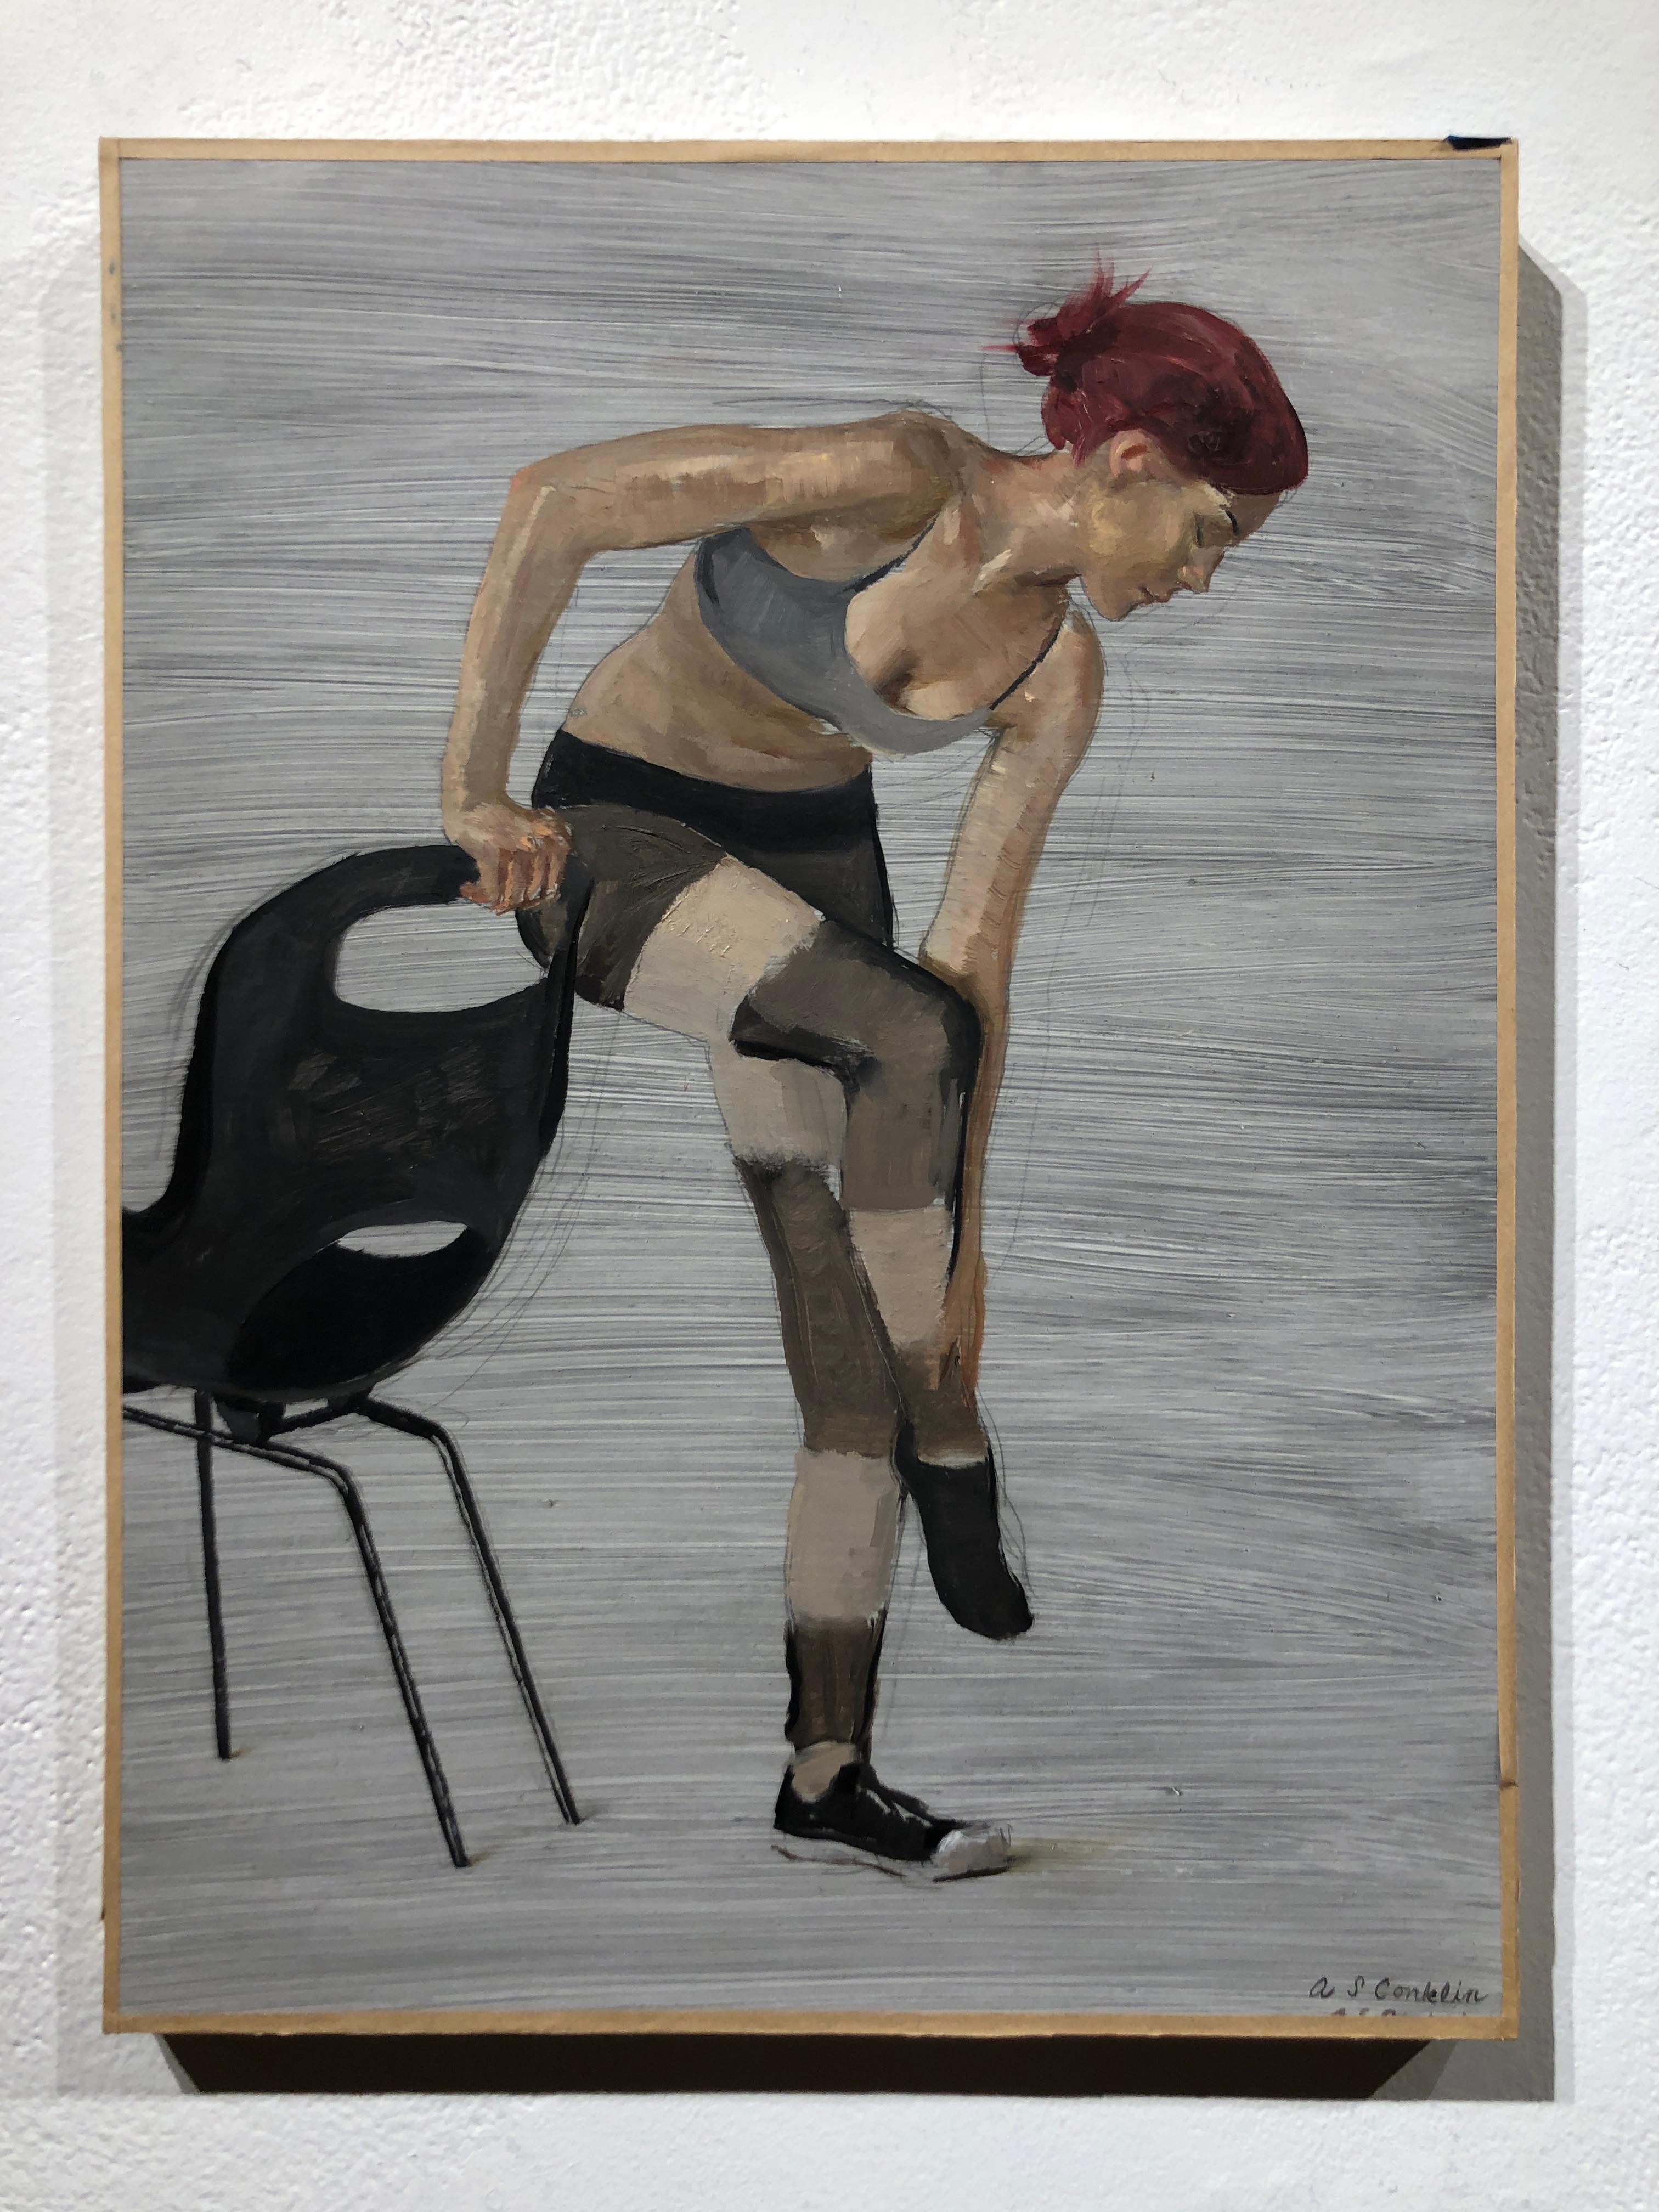 Courtney steht auf einem Fuß, (Studium für Bewegungsfotografie 6) - Original Ölgemälde – Painting von Andrew S. Conklin